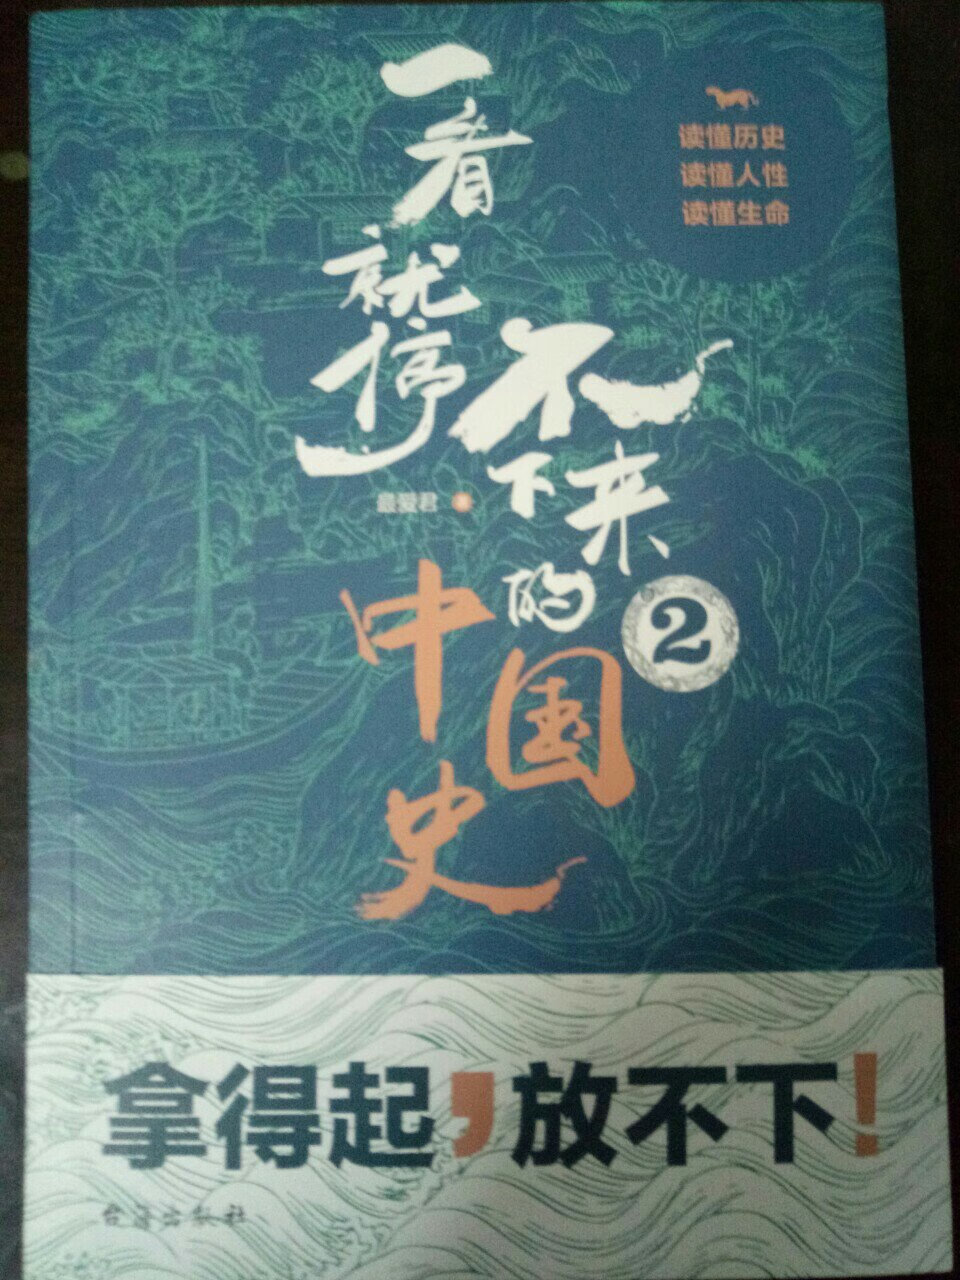 书的包装和质量不错，内容丰富，对了解中国历史帮助很大。